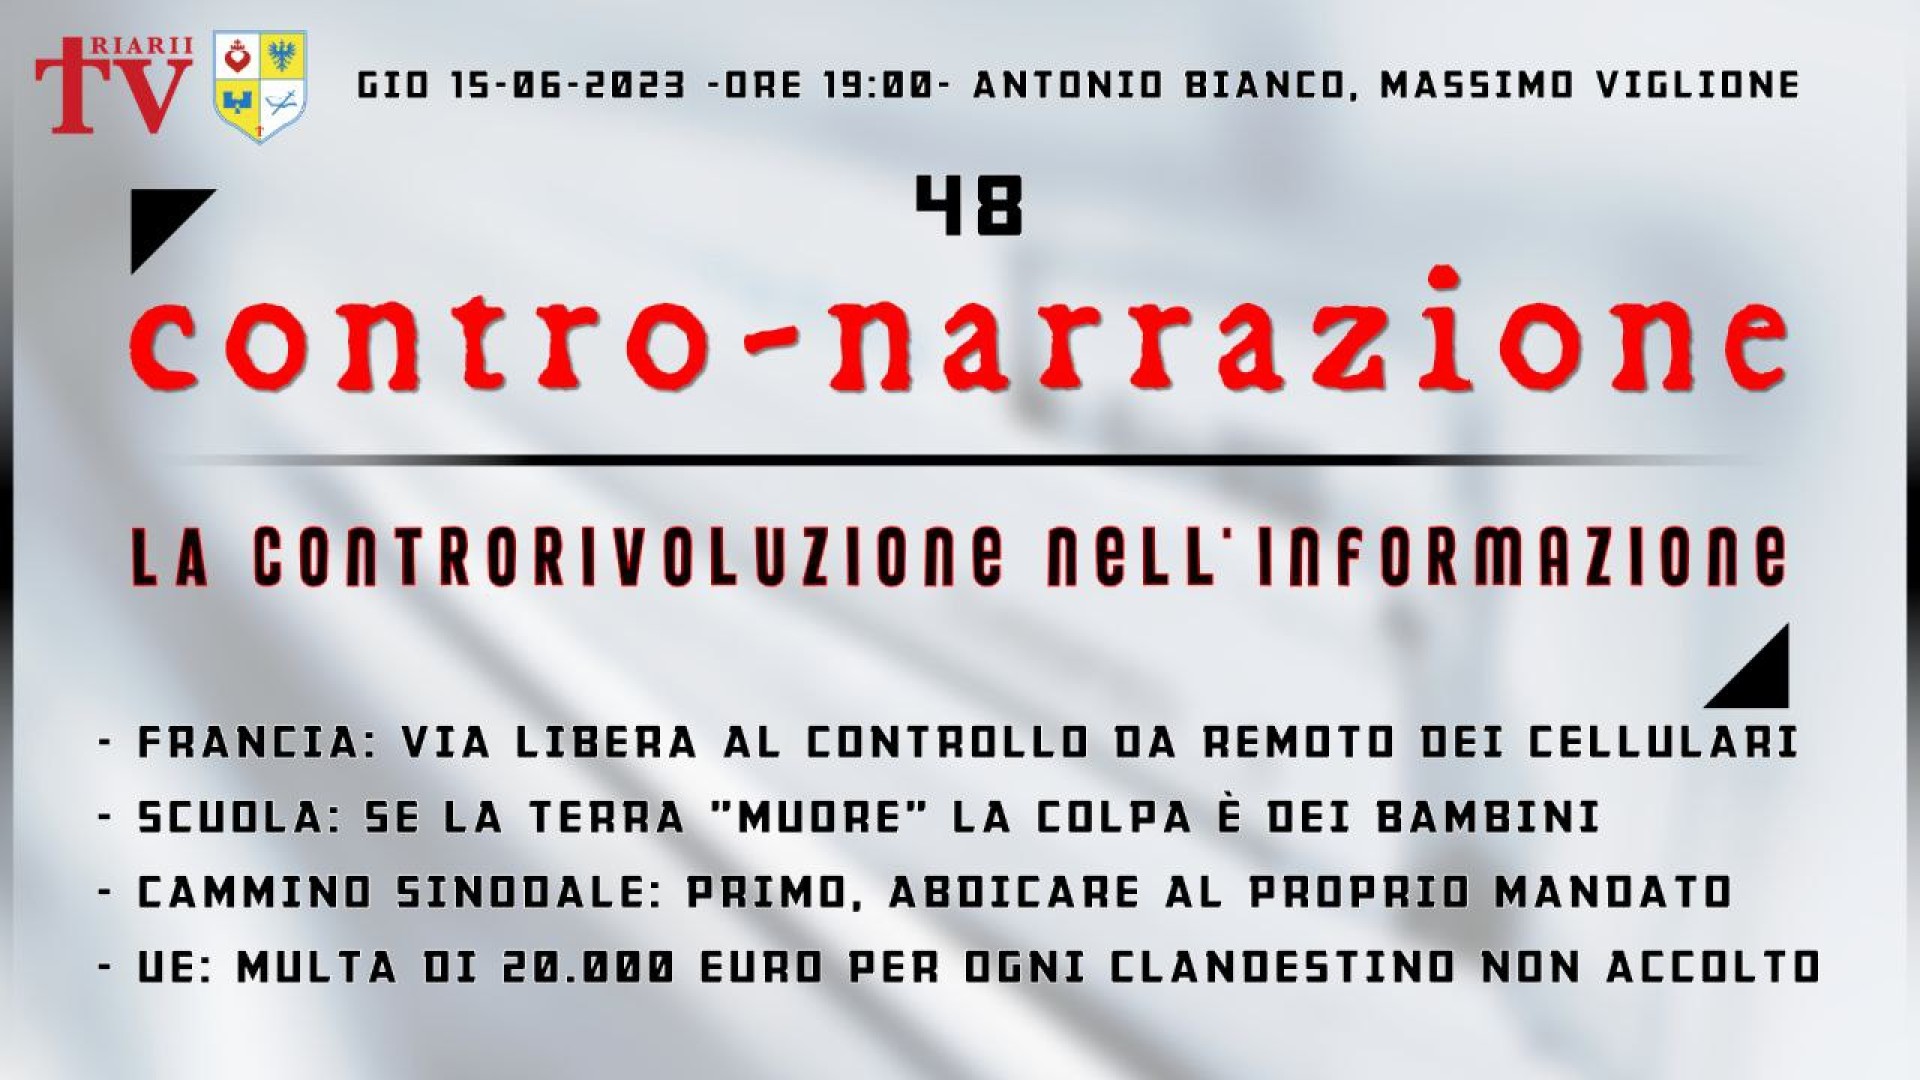 CONTRO-NARRAZIONE NR.48 - GIOV 15 GIUGNO 2023 - Antonio Bianco, Massimo Viglione